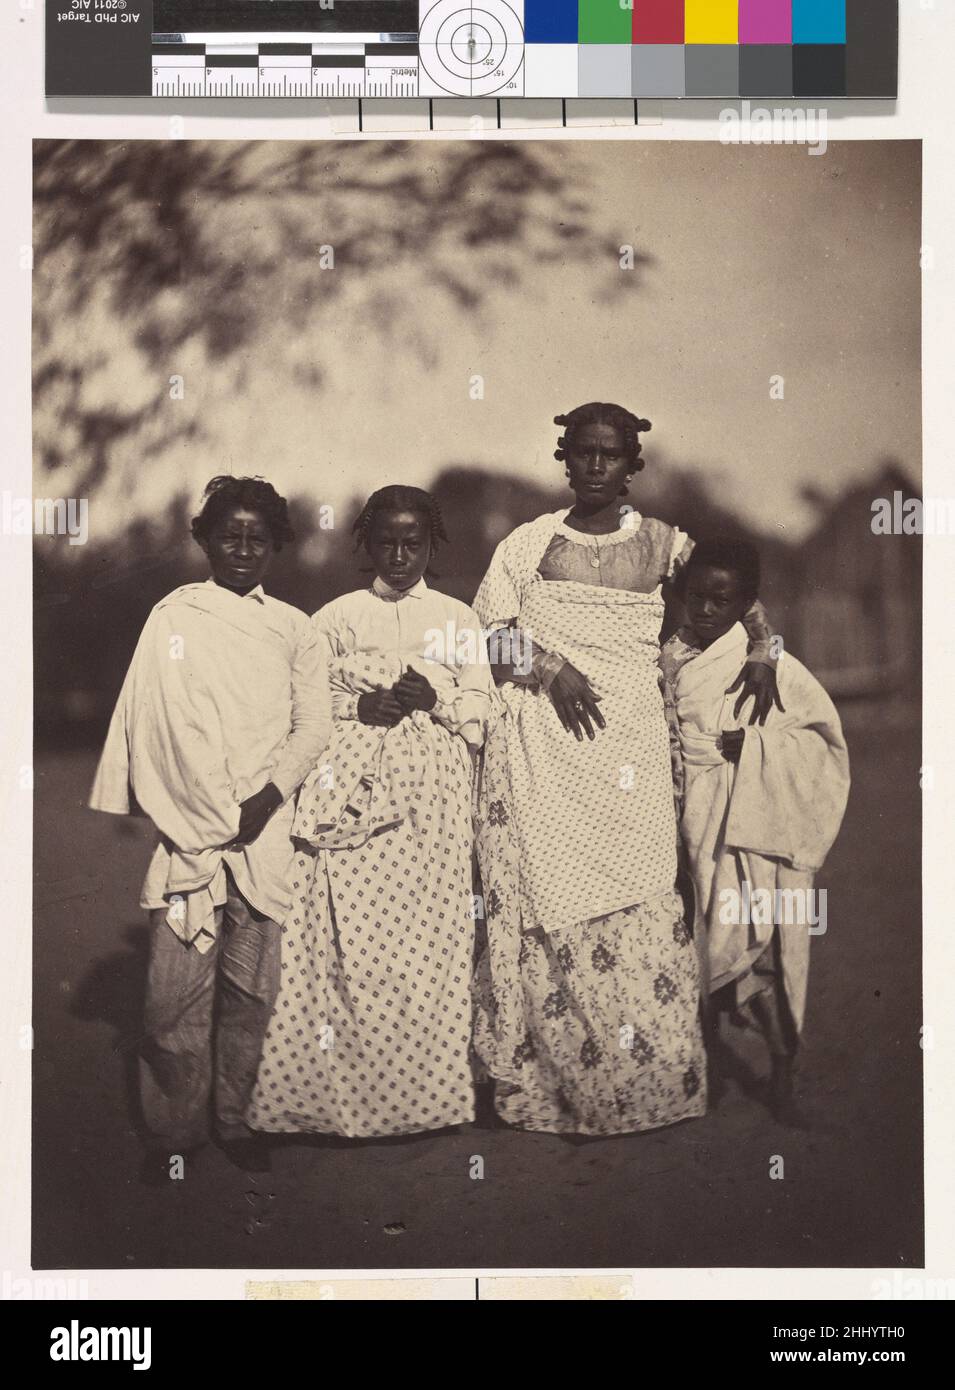 [Family Group] 1863 Désiré Charnay Französisch aufgrund der mangelnden Zusammenarbeit der Regierung unter der Führung der Hova, der mächtigsten ethnischen Gruppe Madagaskars, beschränkte sich Charnays Erkundung der Insel auf einige Ausflüge rund um den Hafen von Tamatave an der Ostküste. Dieses Foto einer Betsimitsaraka-Familie wurde auf Nossi-Malaza, der Insel der Freuden am Nossi-be-See, einer Lagune südlich von Tamatave, aufgenommen. Charnay bemerkte den herzlichen Empfang, den er dort erhielt, die schlaksige Schönheit der Frauen und die allgemeine Atmosphäre des Wohlstands. Er beschrieb die geflochtenen Haare der Frauen und ihre anmutigen Stockfoto